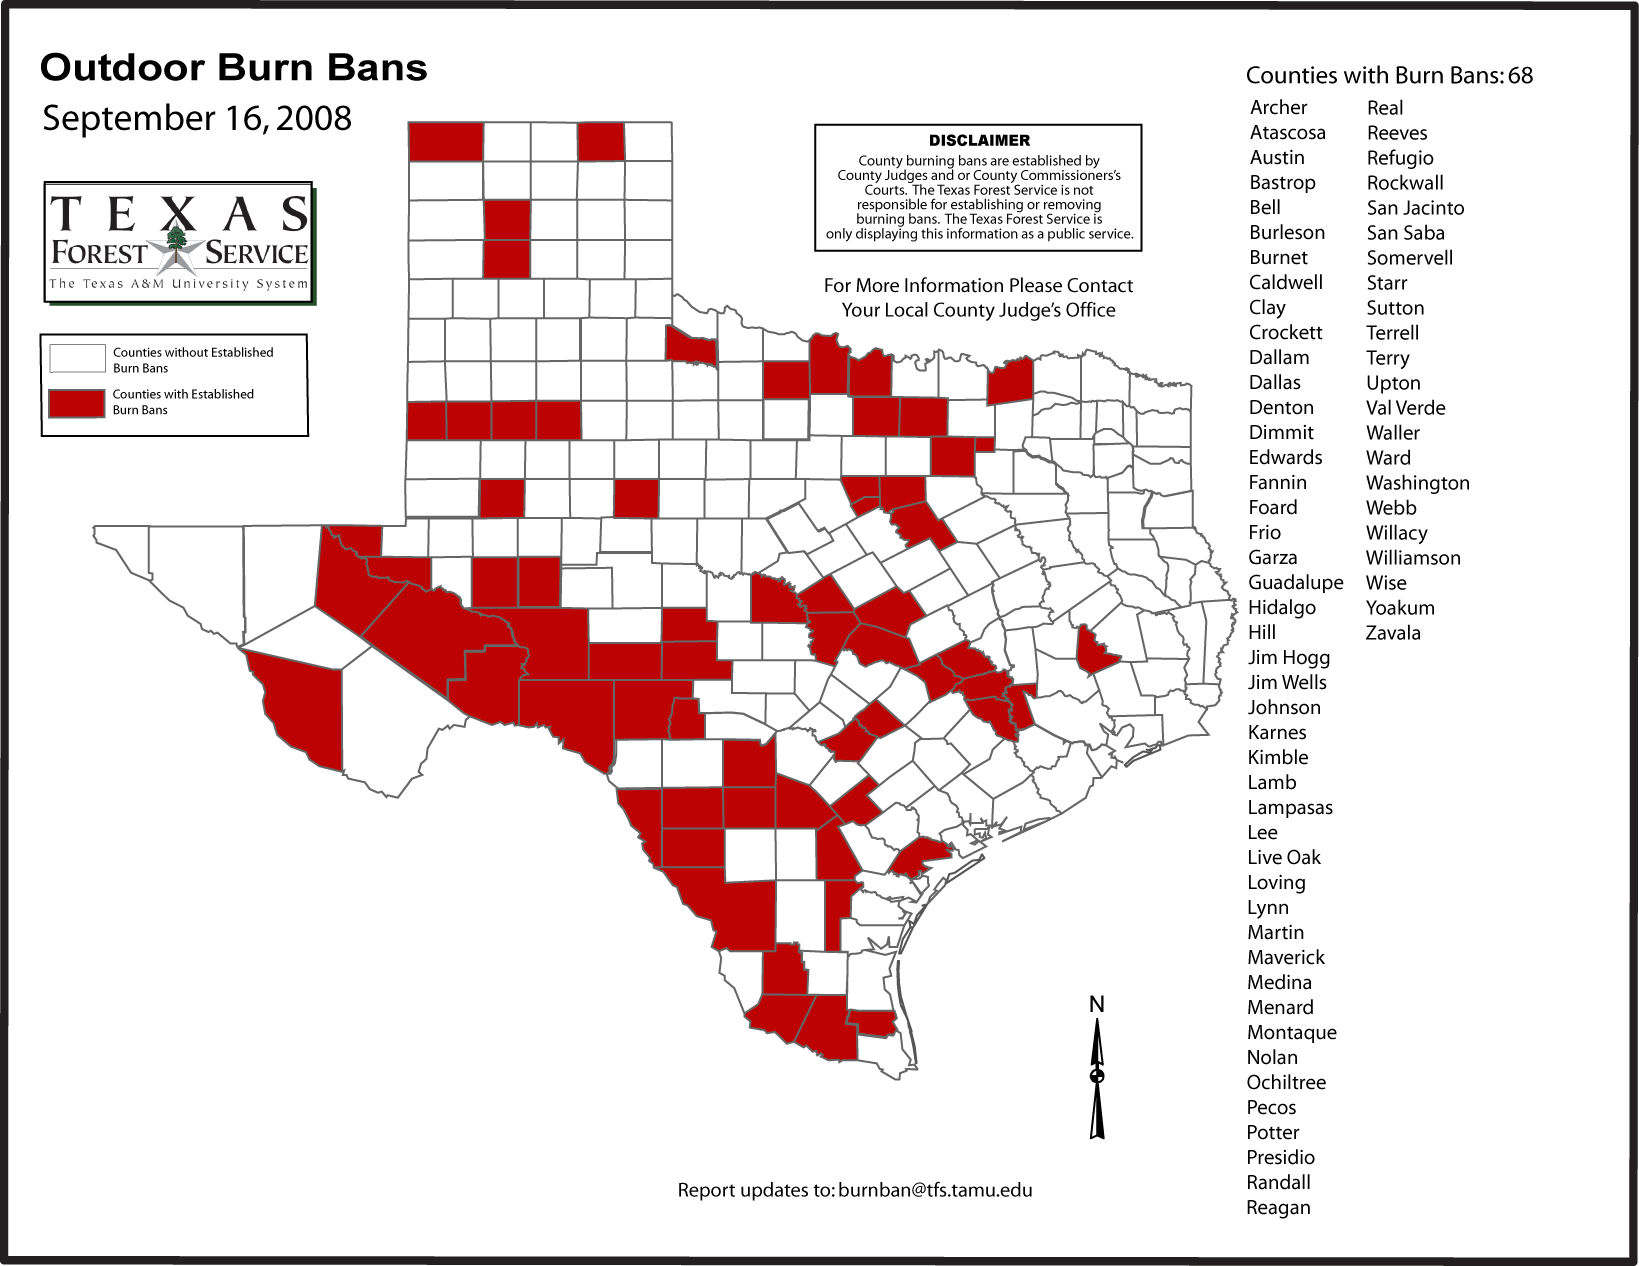 Texas Outdoor Burn Bans